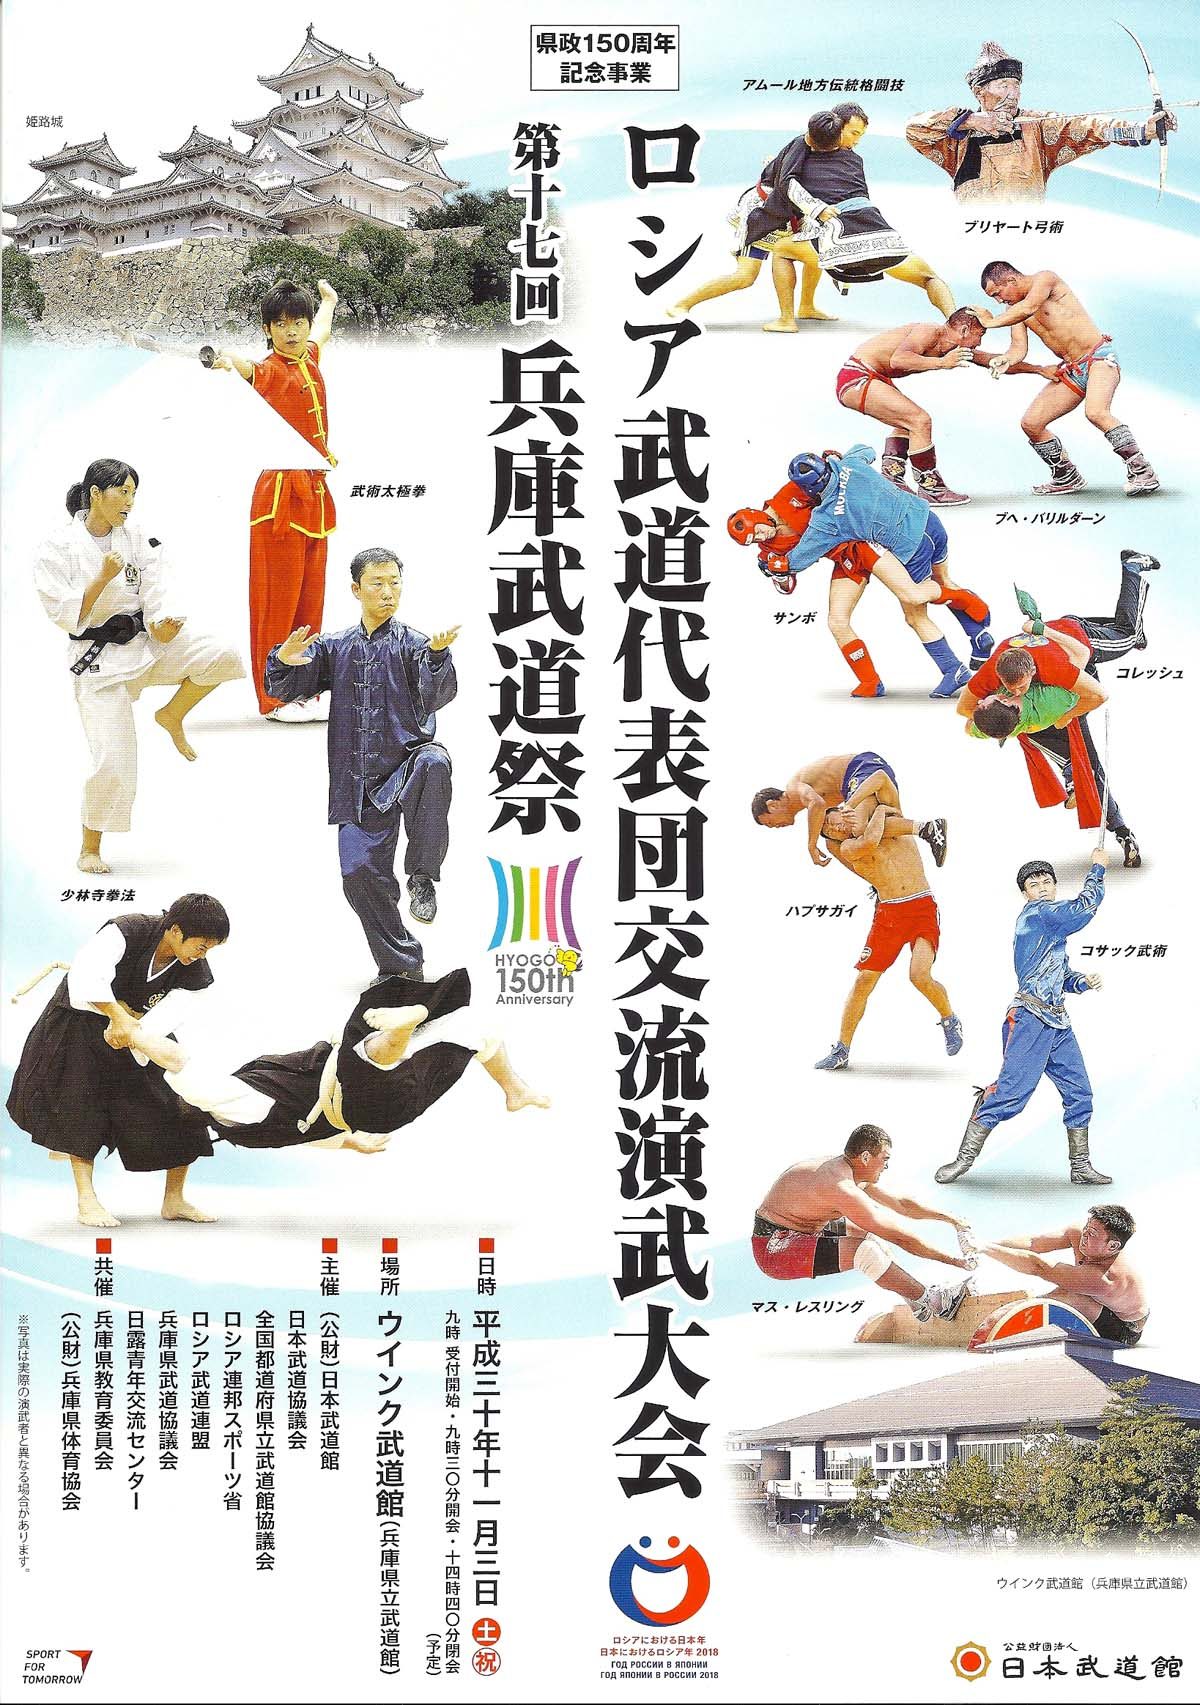 Фестиваль боевых искусств в г. Химэдзи! Год России в Японии!